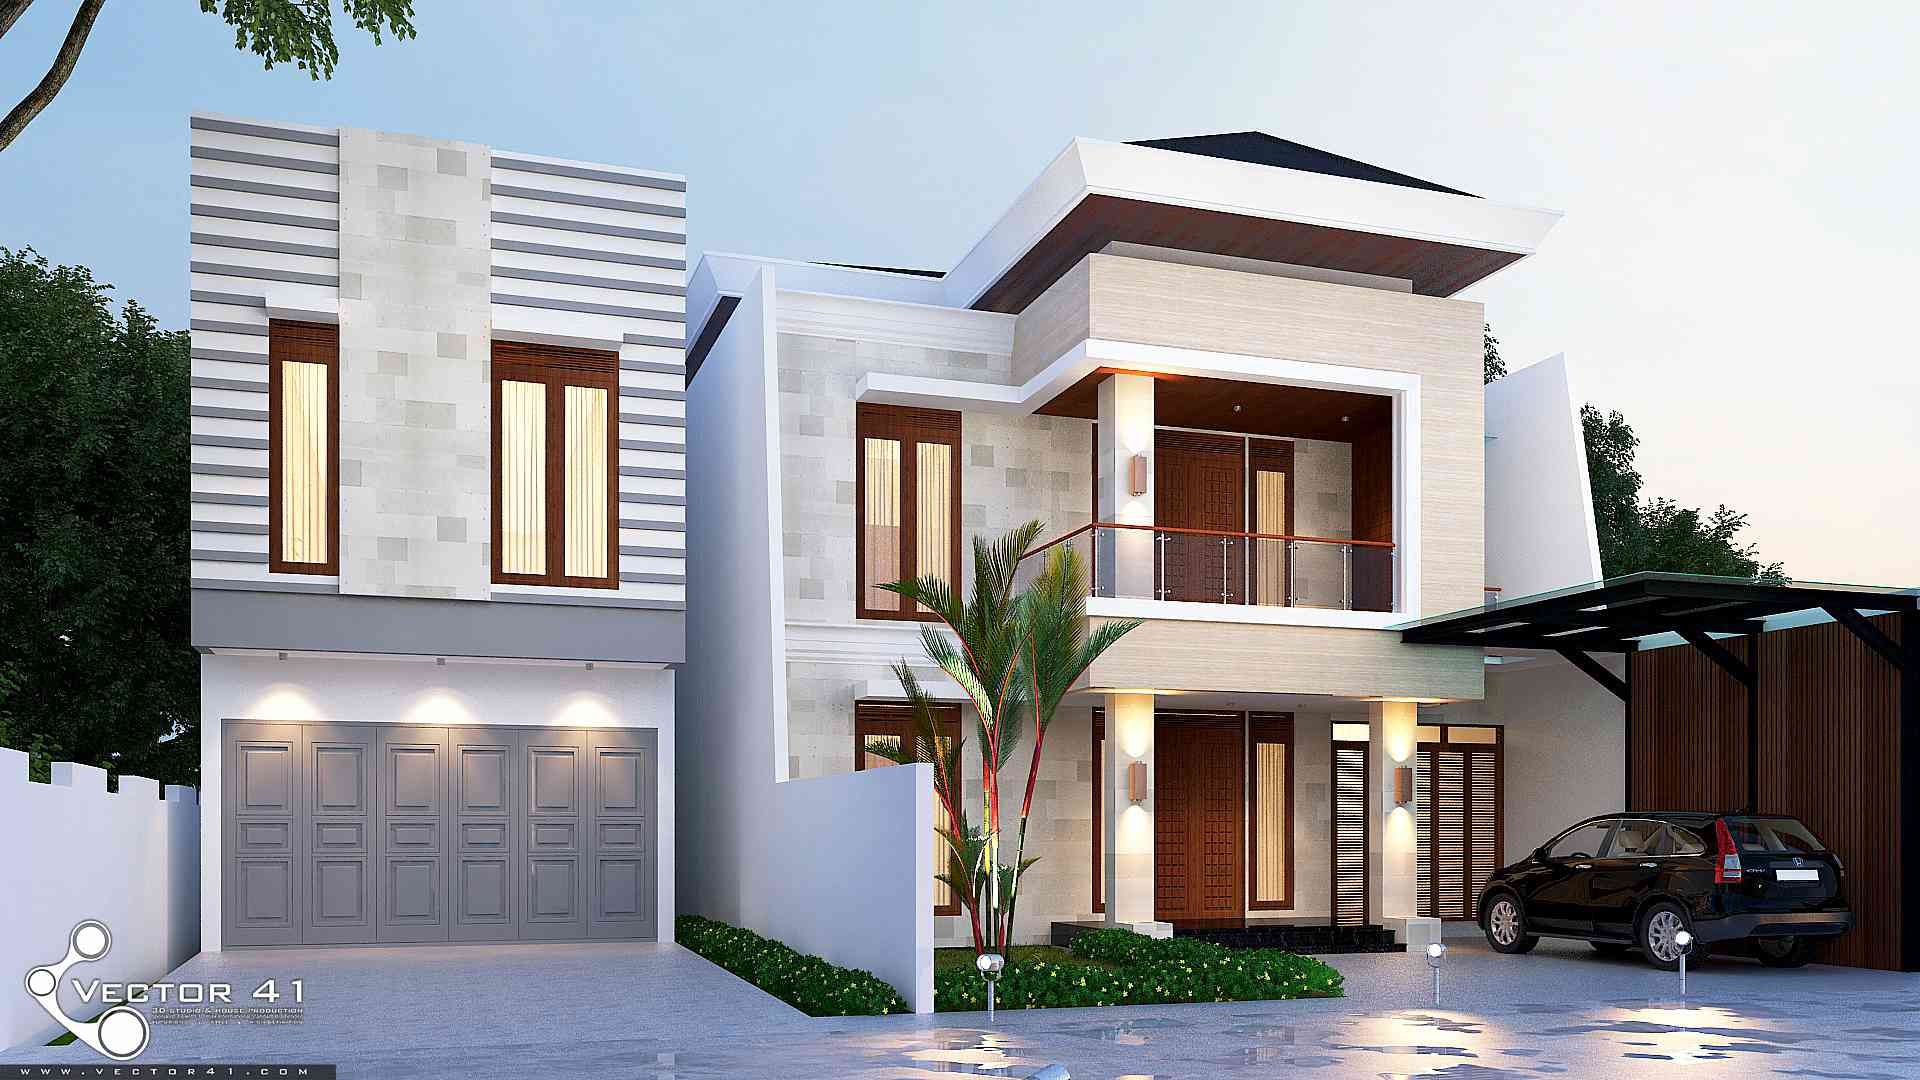 Exterior House_Medan (Mr. Andi), VECTOR41 VECTOR41 Rumah prefabrikasi Kontraktor